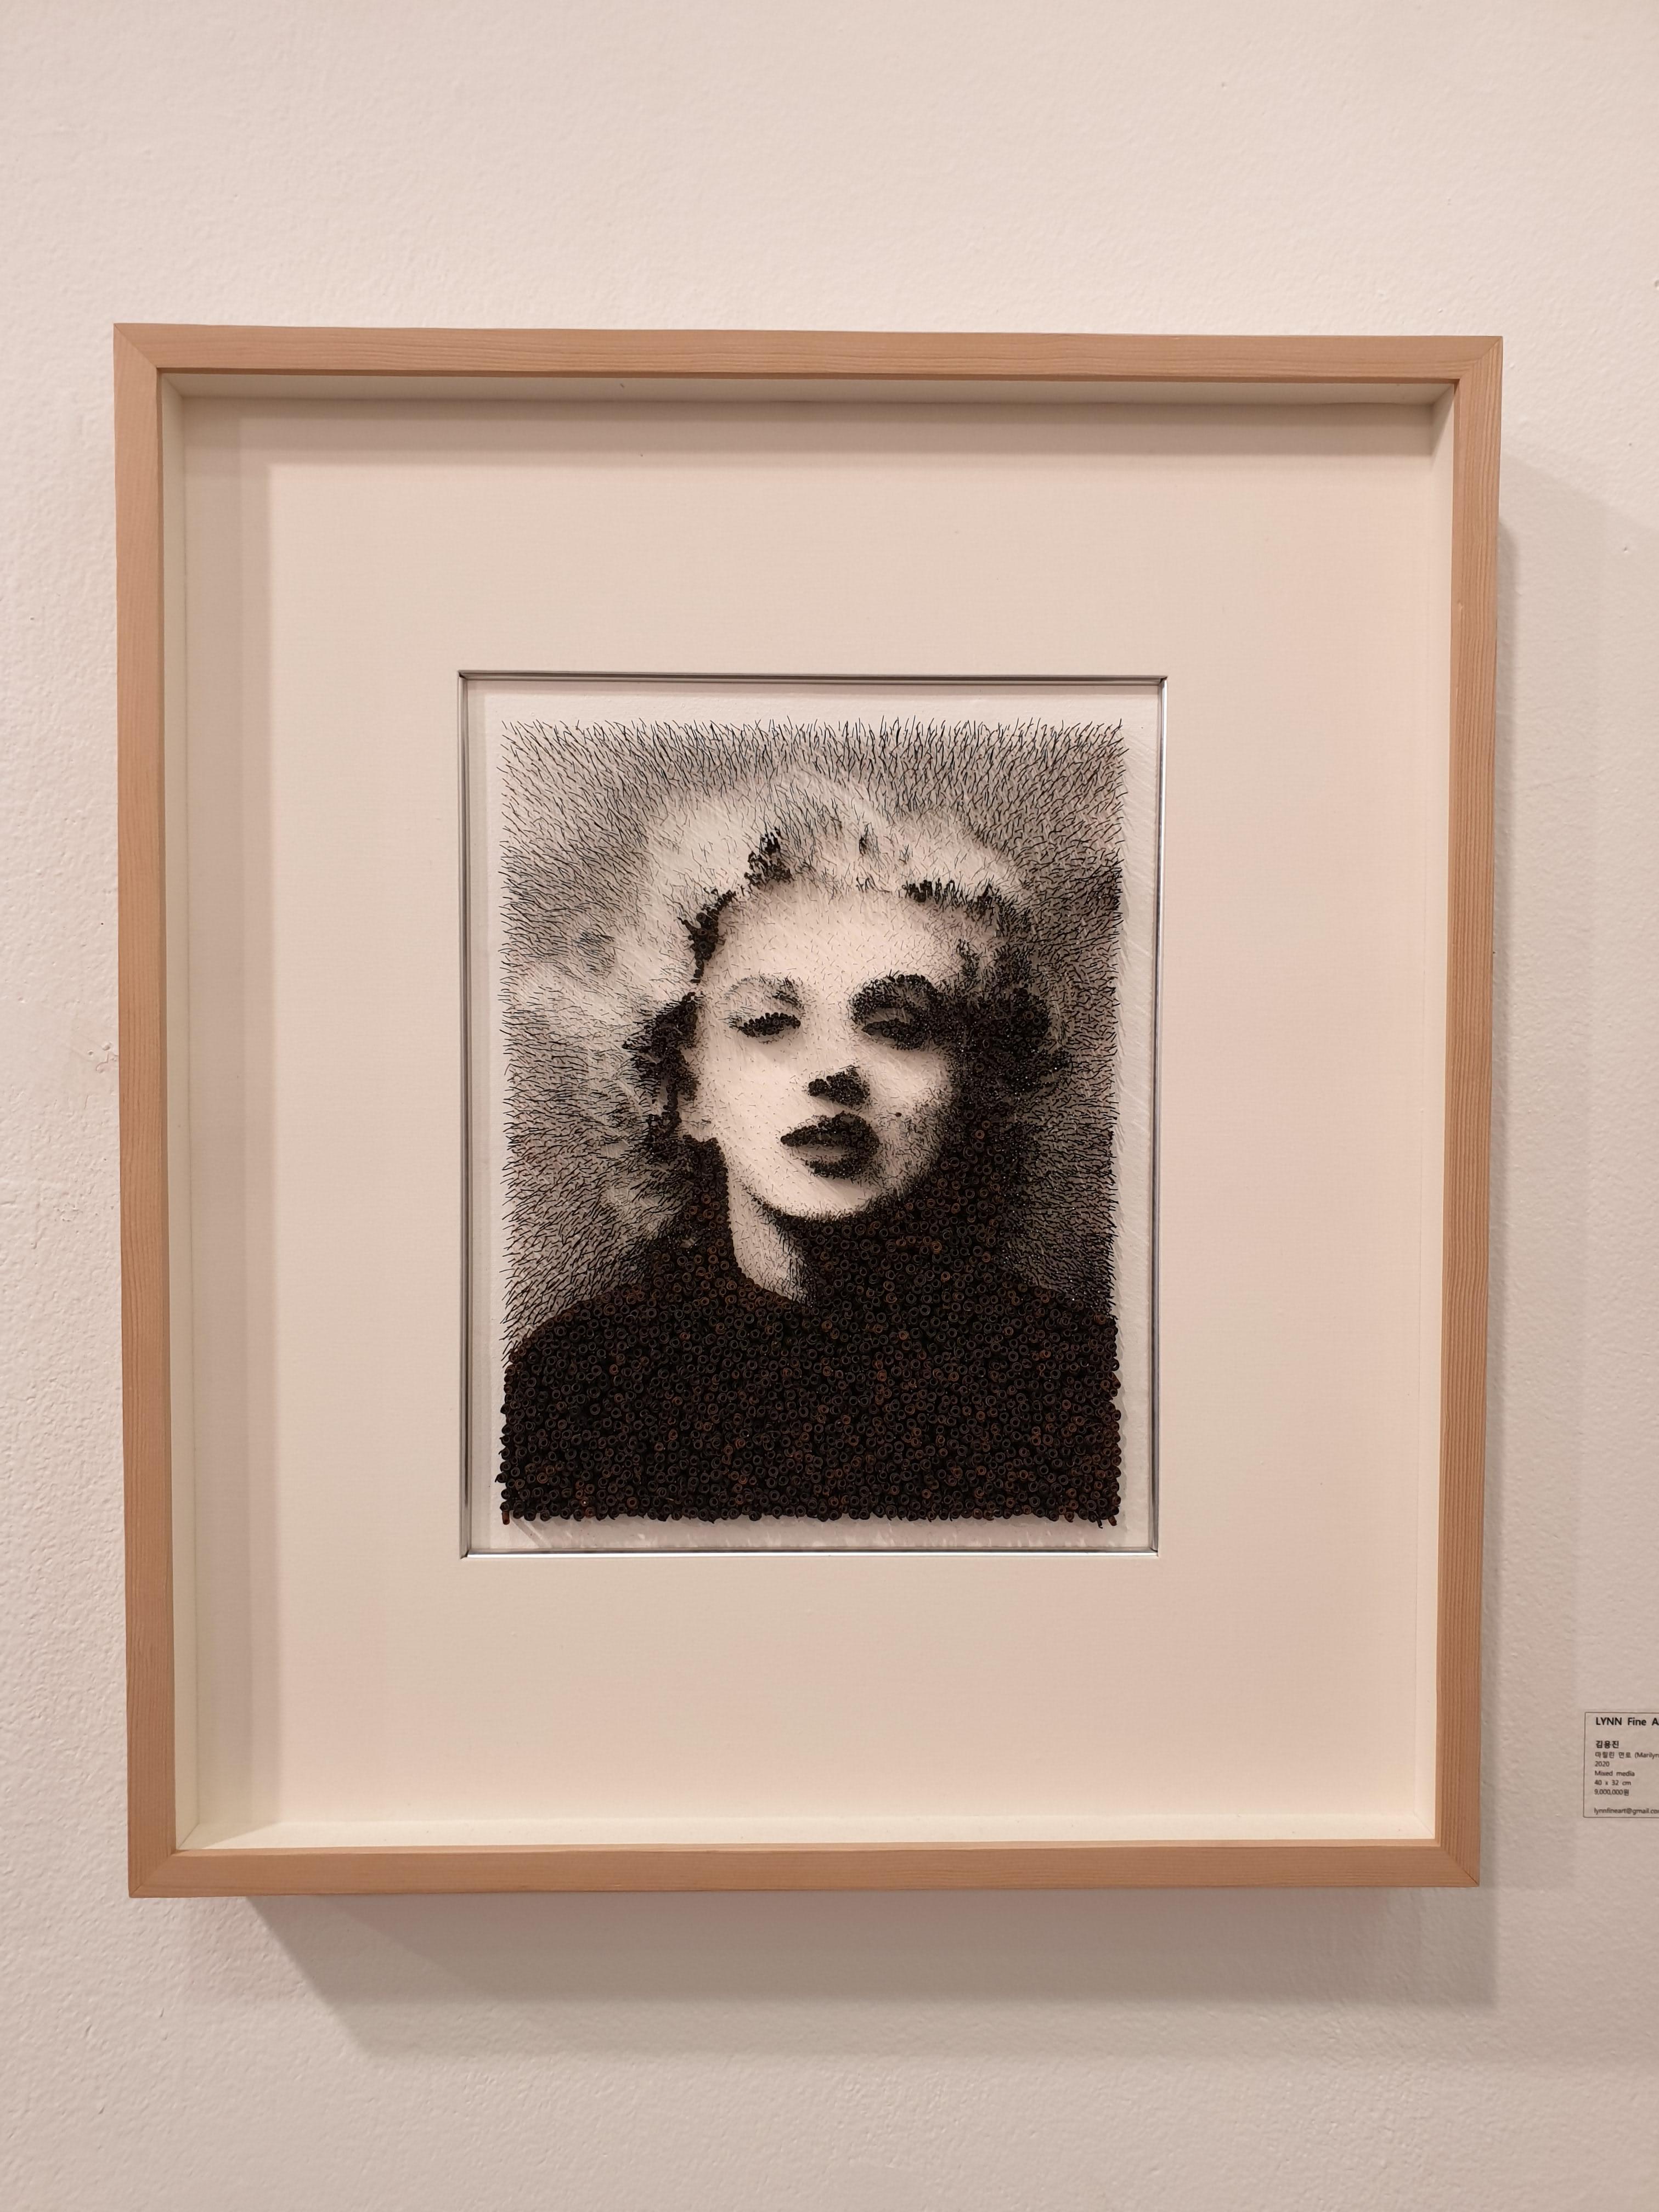 Marilyn Monroe[Schwarz, Weiß, Stahl auf Leinwand, Stereoskop, Porträt, neue Medien] (Medienkunst), Mixed Media Art, von Kim Yong Jin